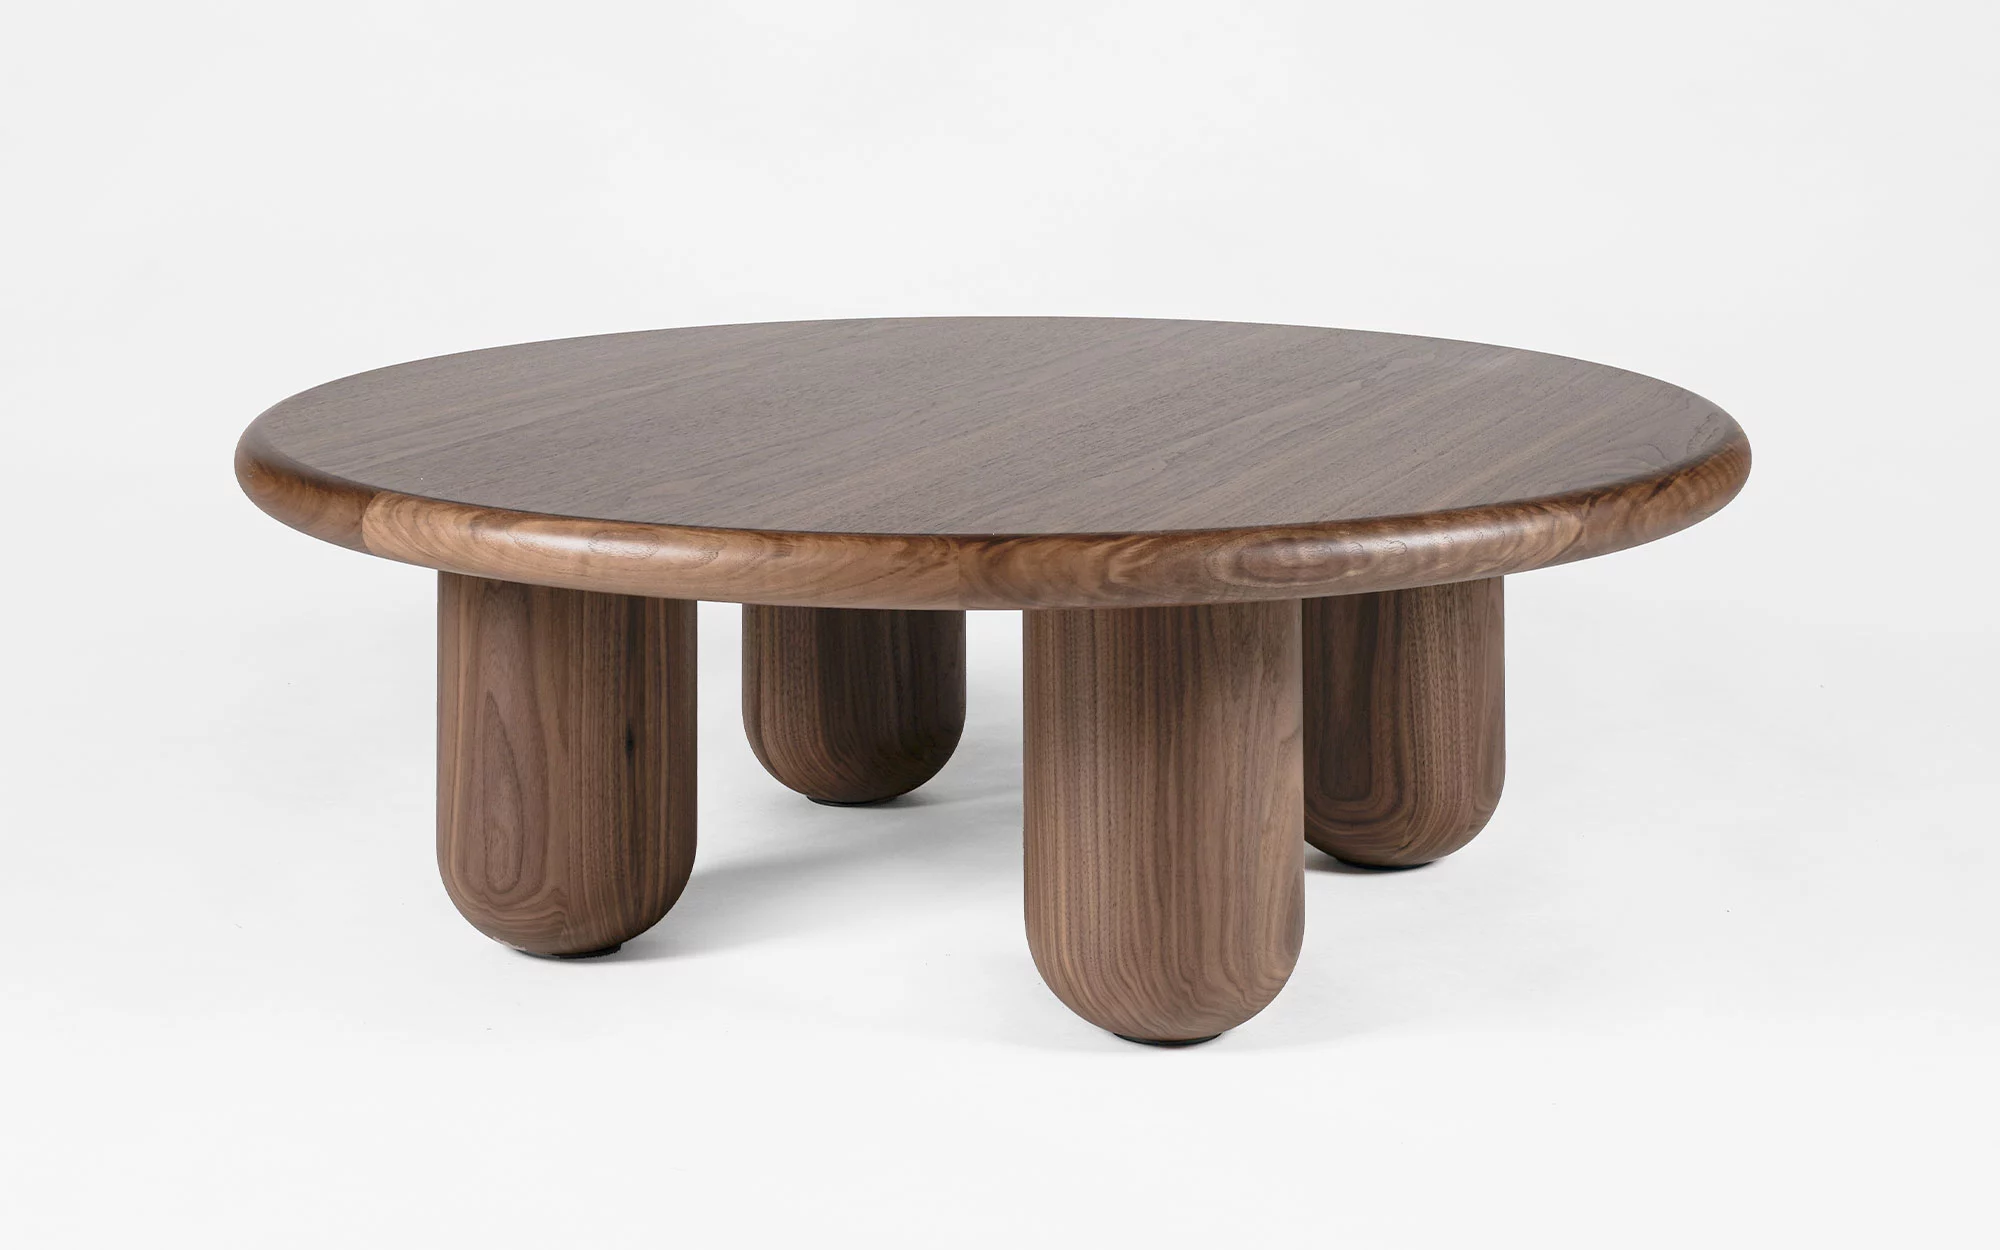 Organism coffee table - Jaime Hayon - Storage - Galerie kreo